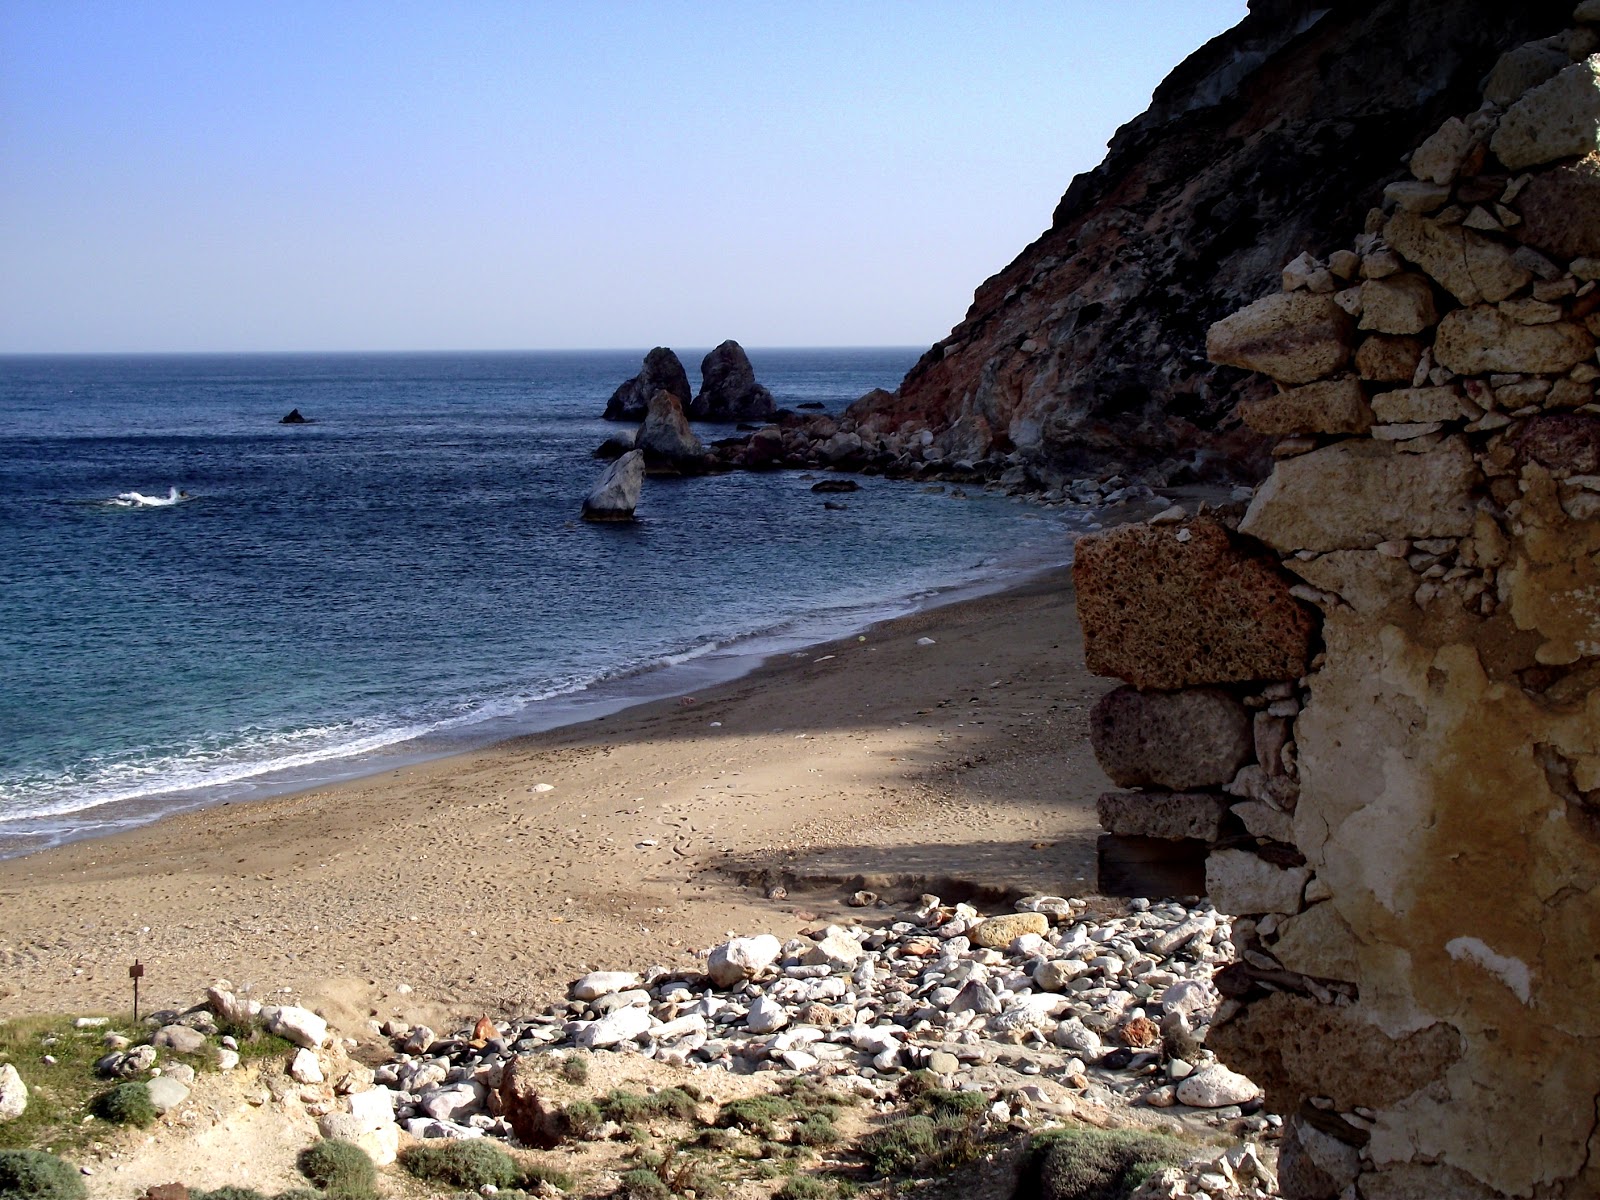 Fotografie cu Paralia Thiafes cu o suprafață de nisip negru și pietricel